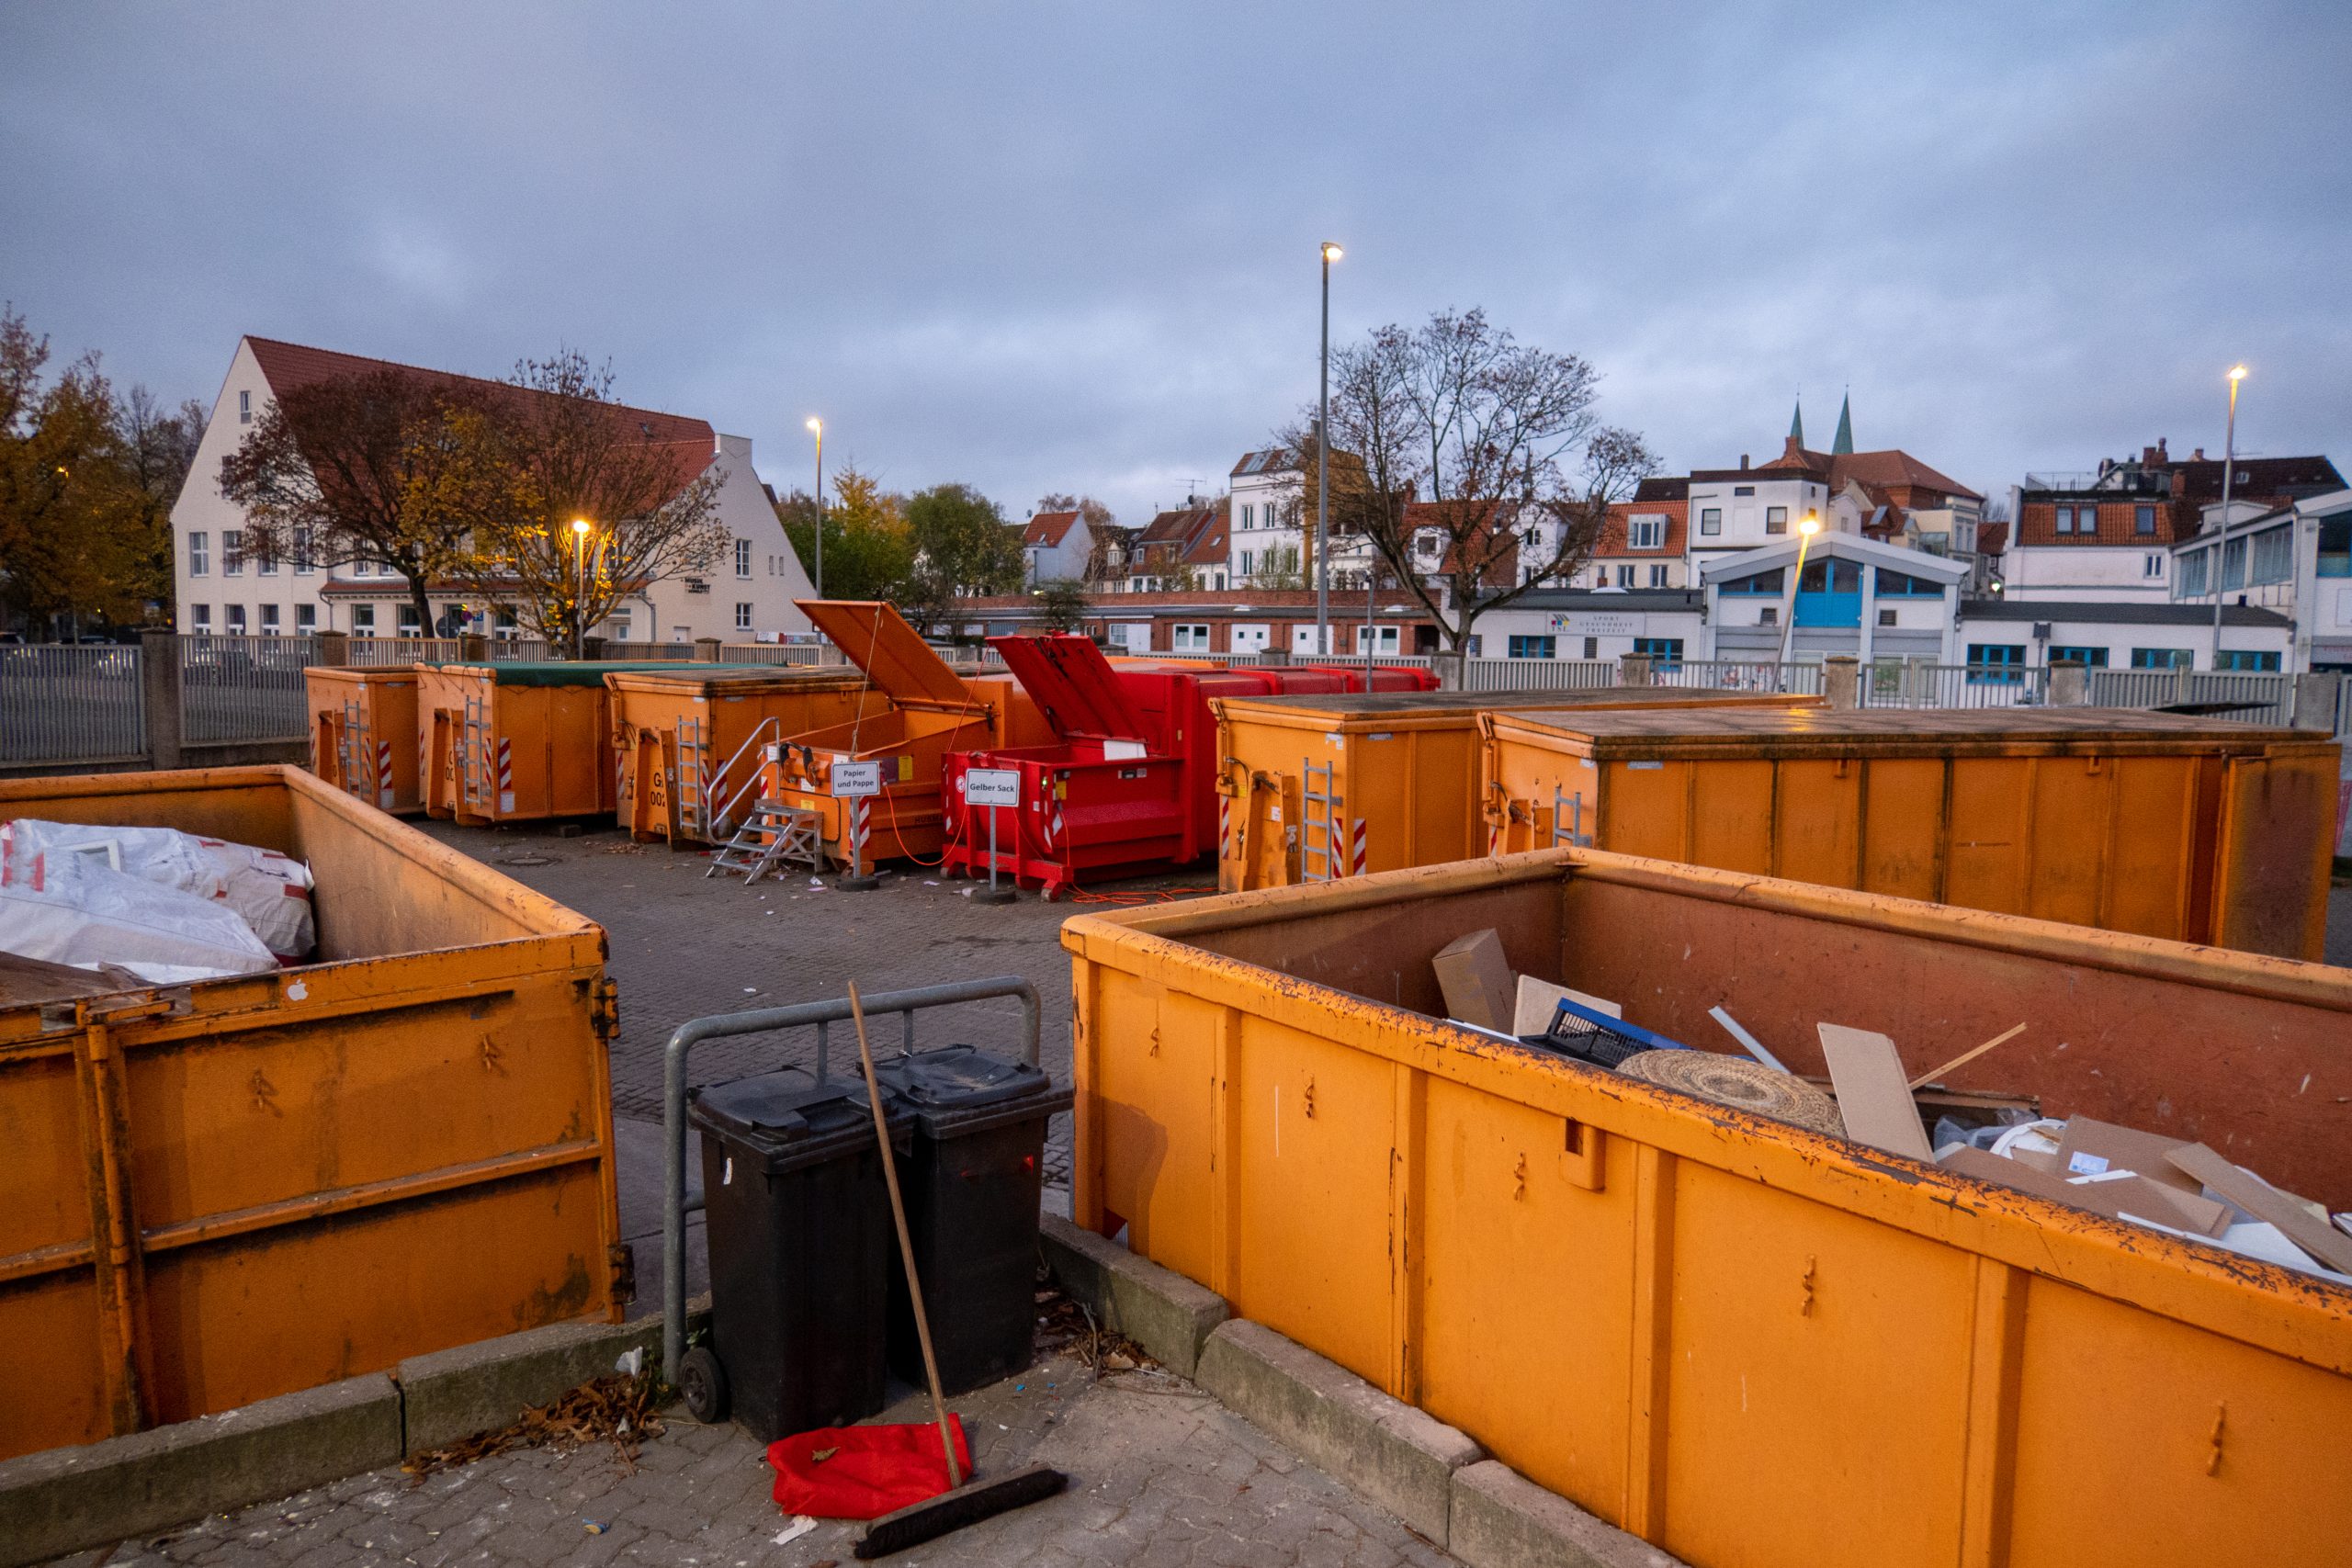 Abfallcontainer auf städtischem Recyclinghof bei Dämmerung.